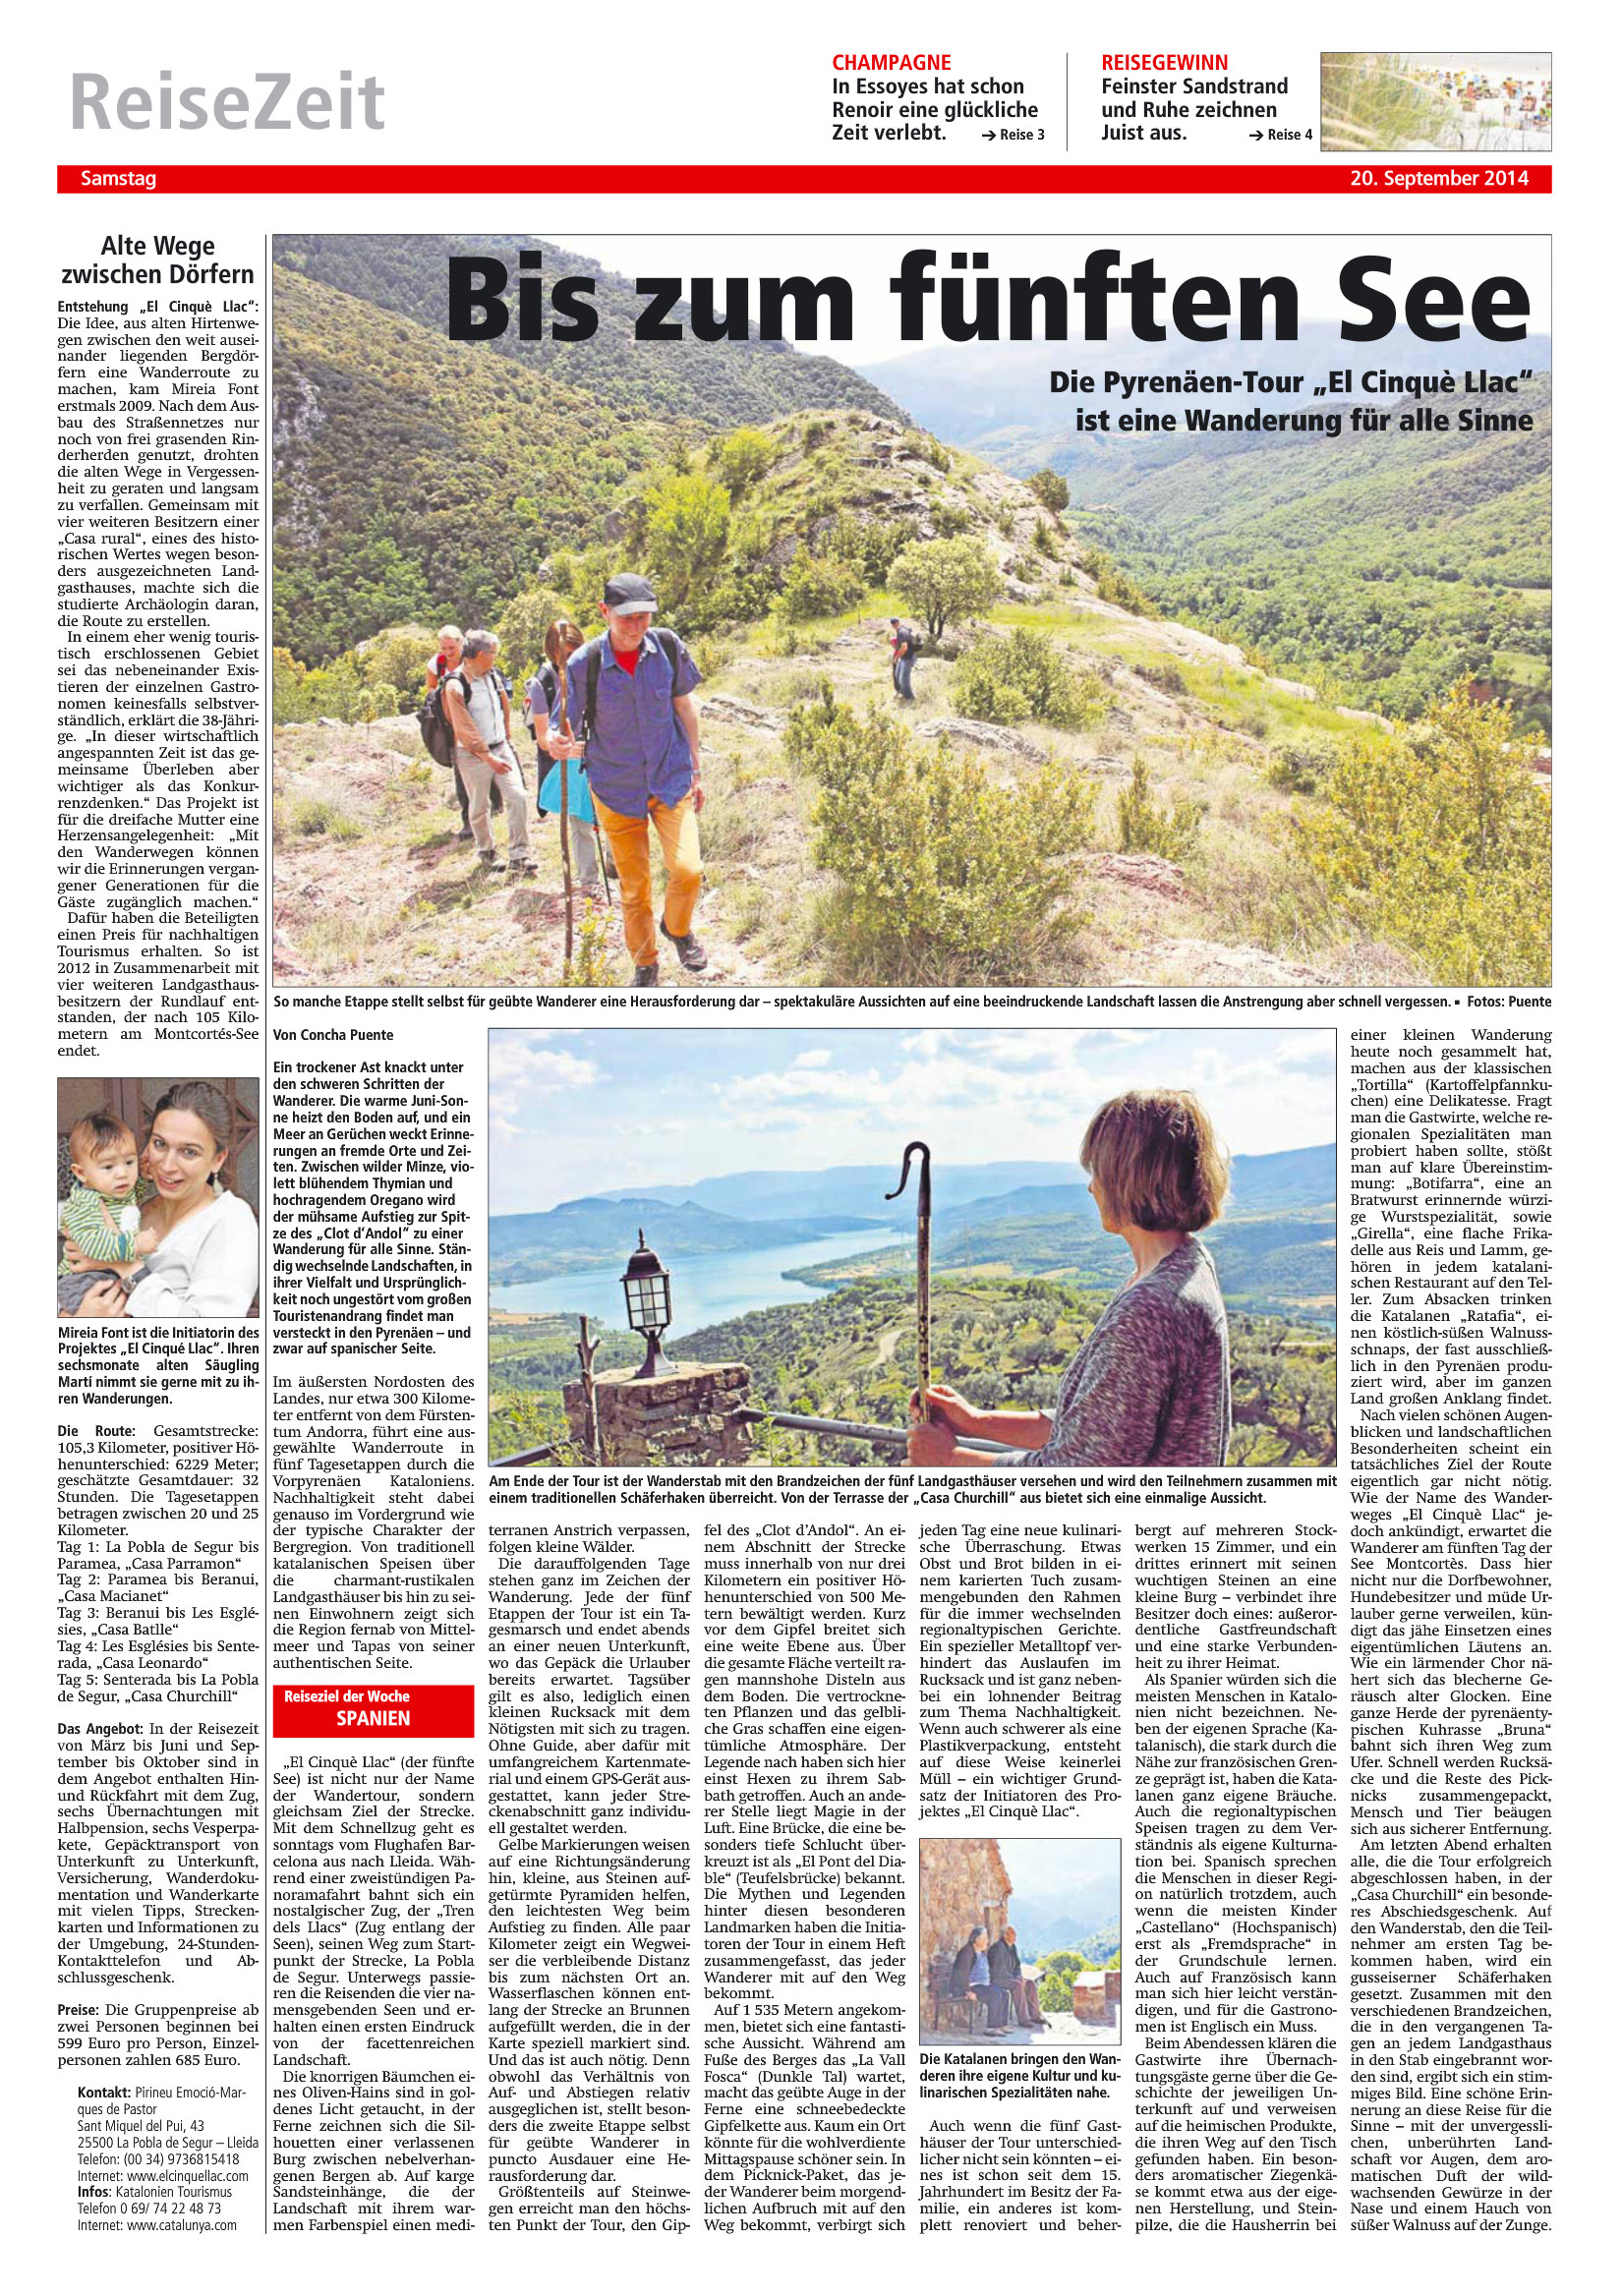 Bis zum fünften See Die Pyrenäen-Tour El Cinquè Llac ist eine wanderung für alle Sinne. Westfälische Anzeiger 2014 09 20